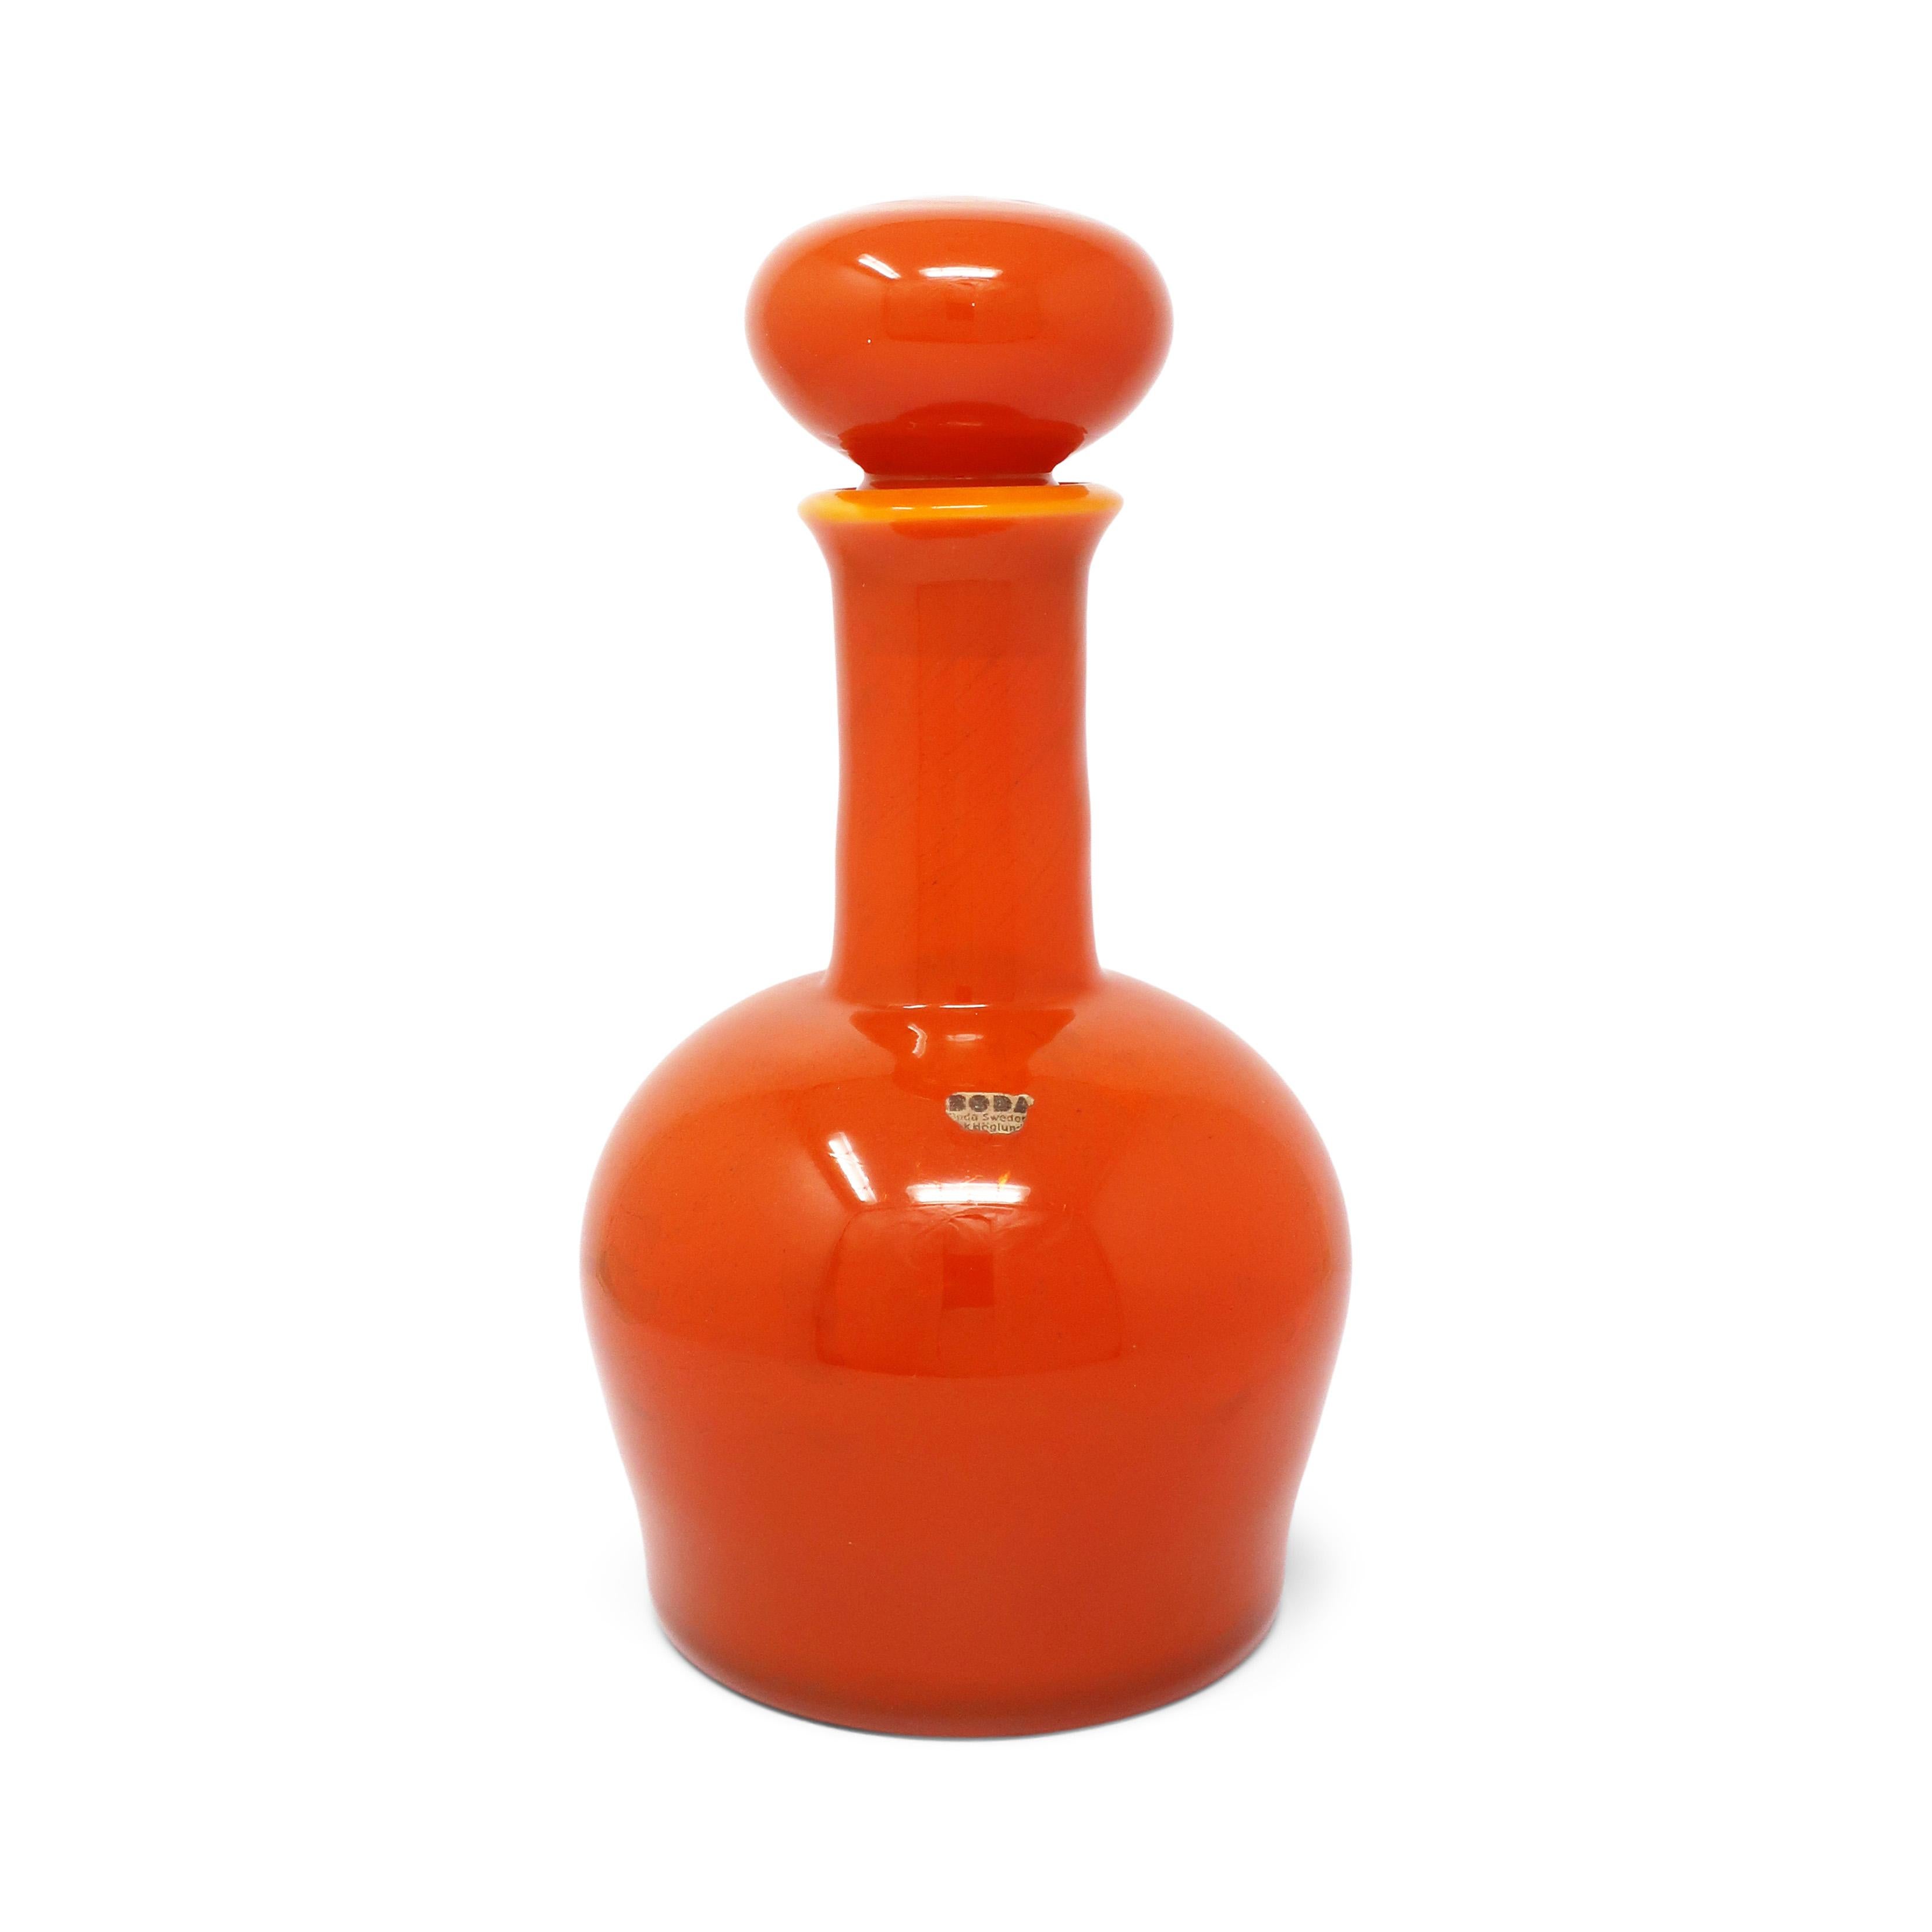 Magnifique carafe suédoise moderne en verre d'art orange avec bouchon, réalisée par Erik Hoglund pour Boda (aujourd'hui connu sous le nom de Kosta Boda).  Une forme classique conçue par un maître de l'art verrier et un pionnier du design moderne du